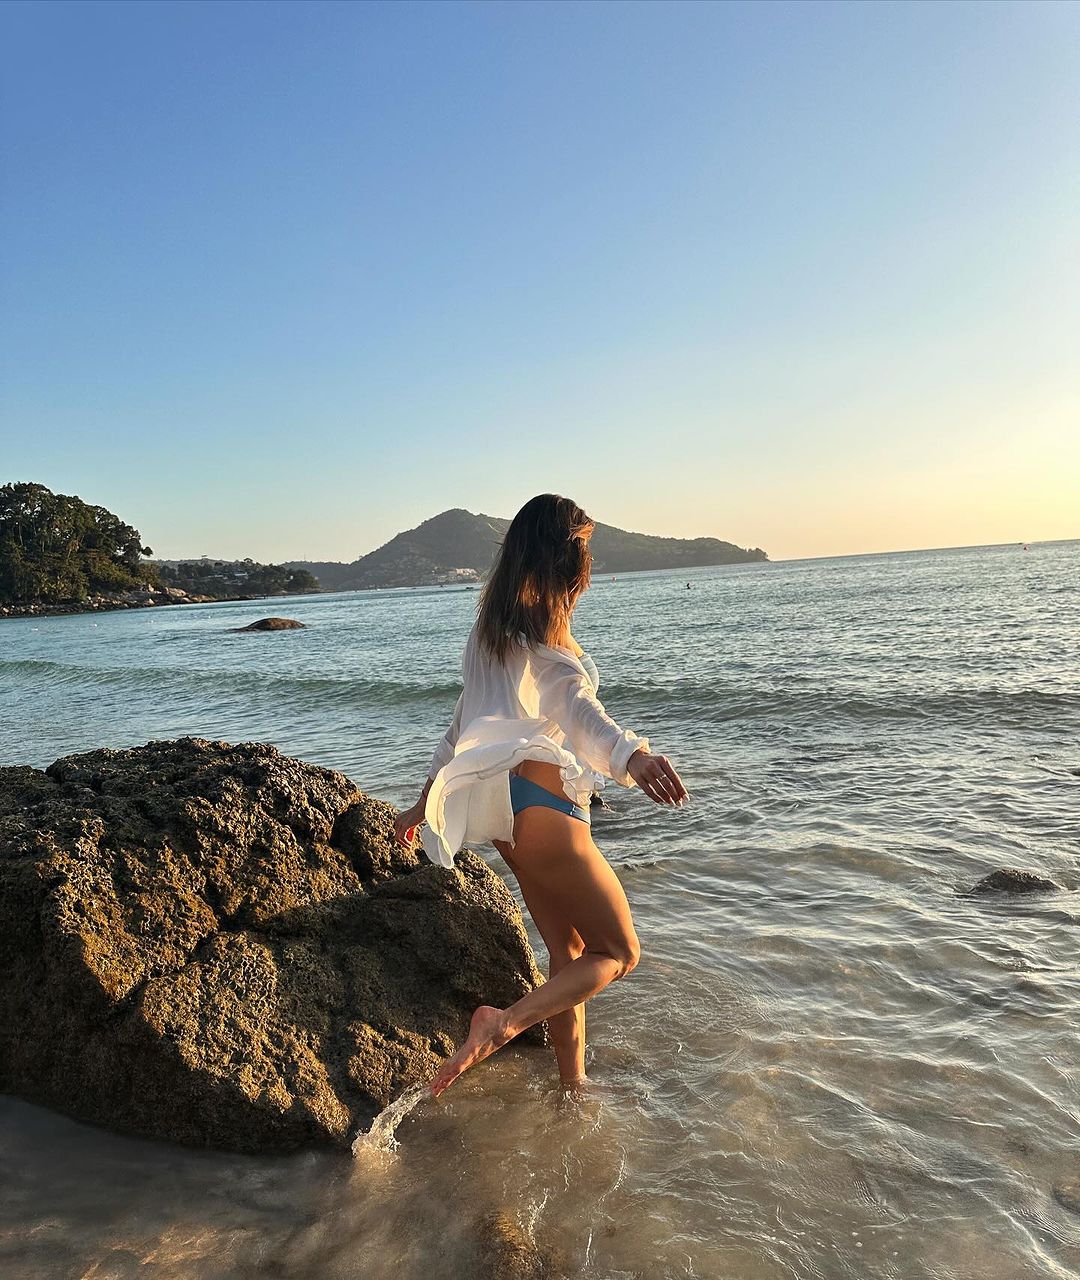 Alessandra Ambrosio Gets Her Vitamin Sea In! - Photo 9